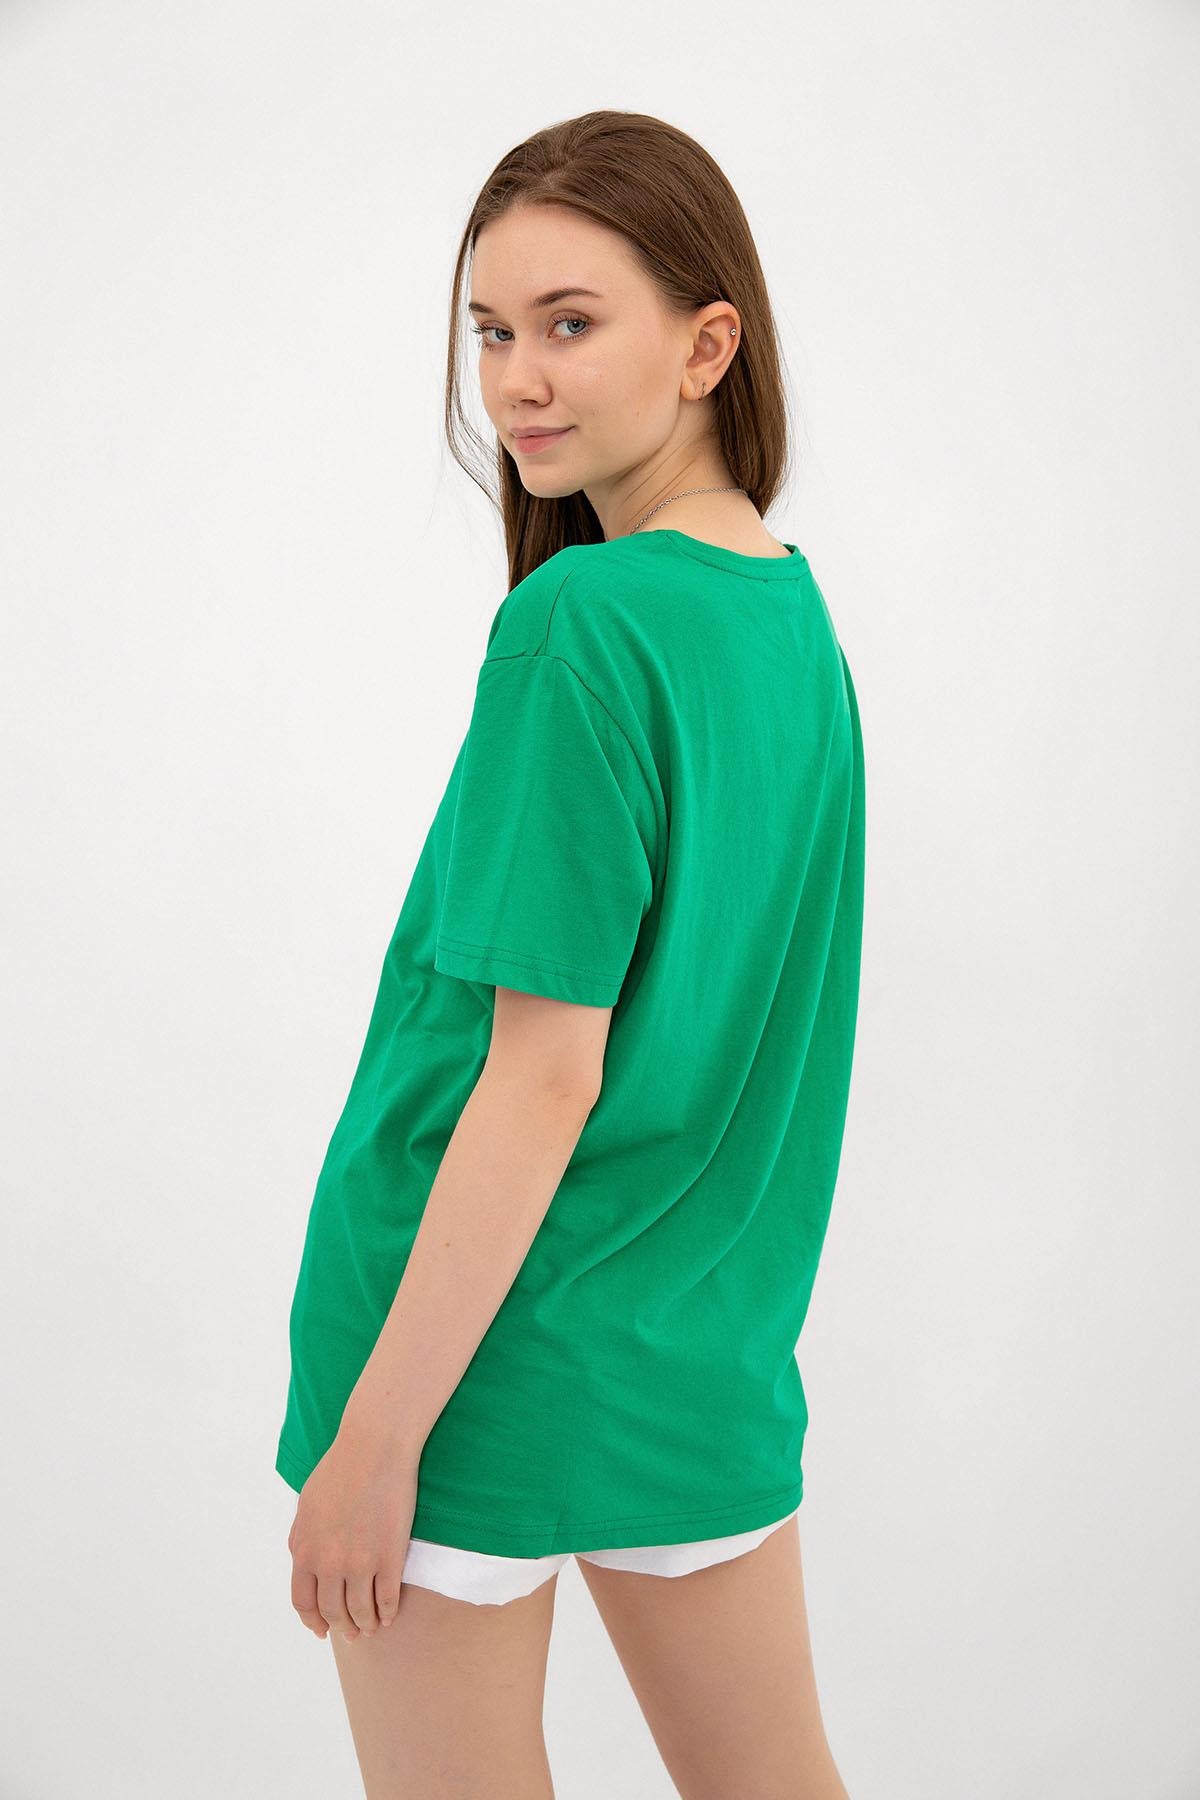 Amor Baskılı Oversize %100 Pamuk Kadın Tişört